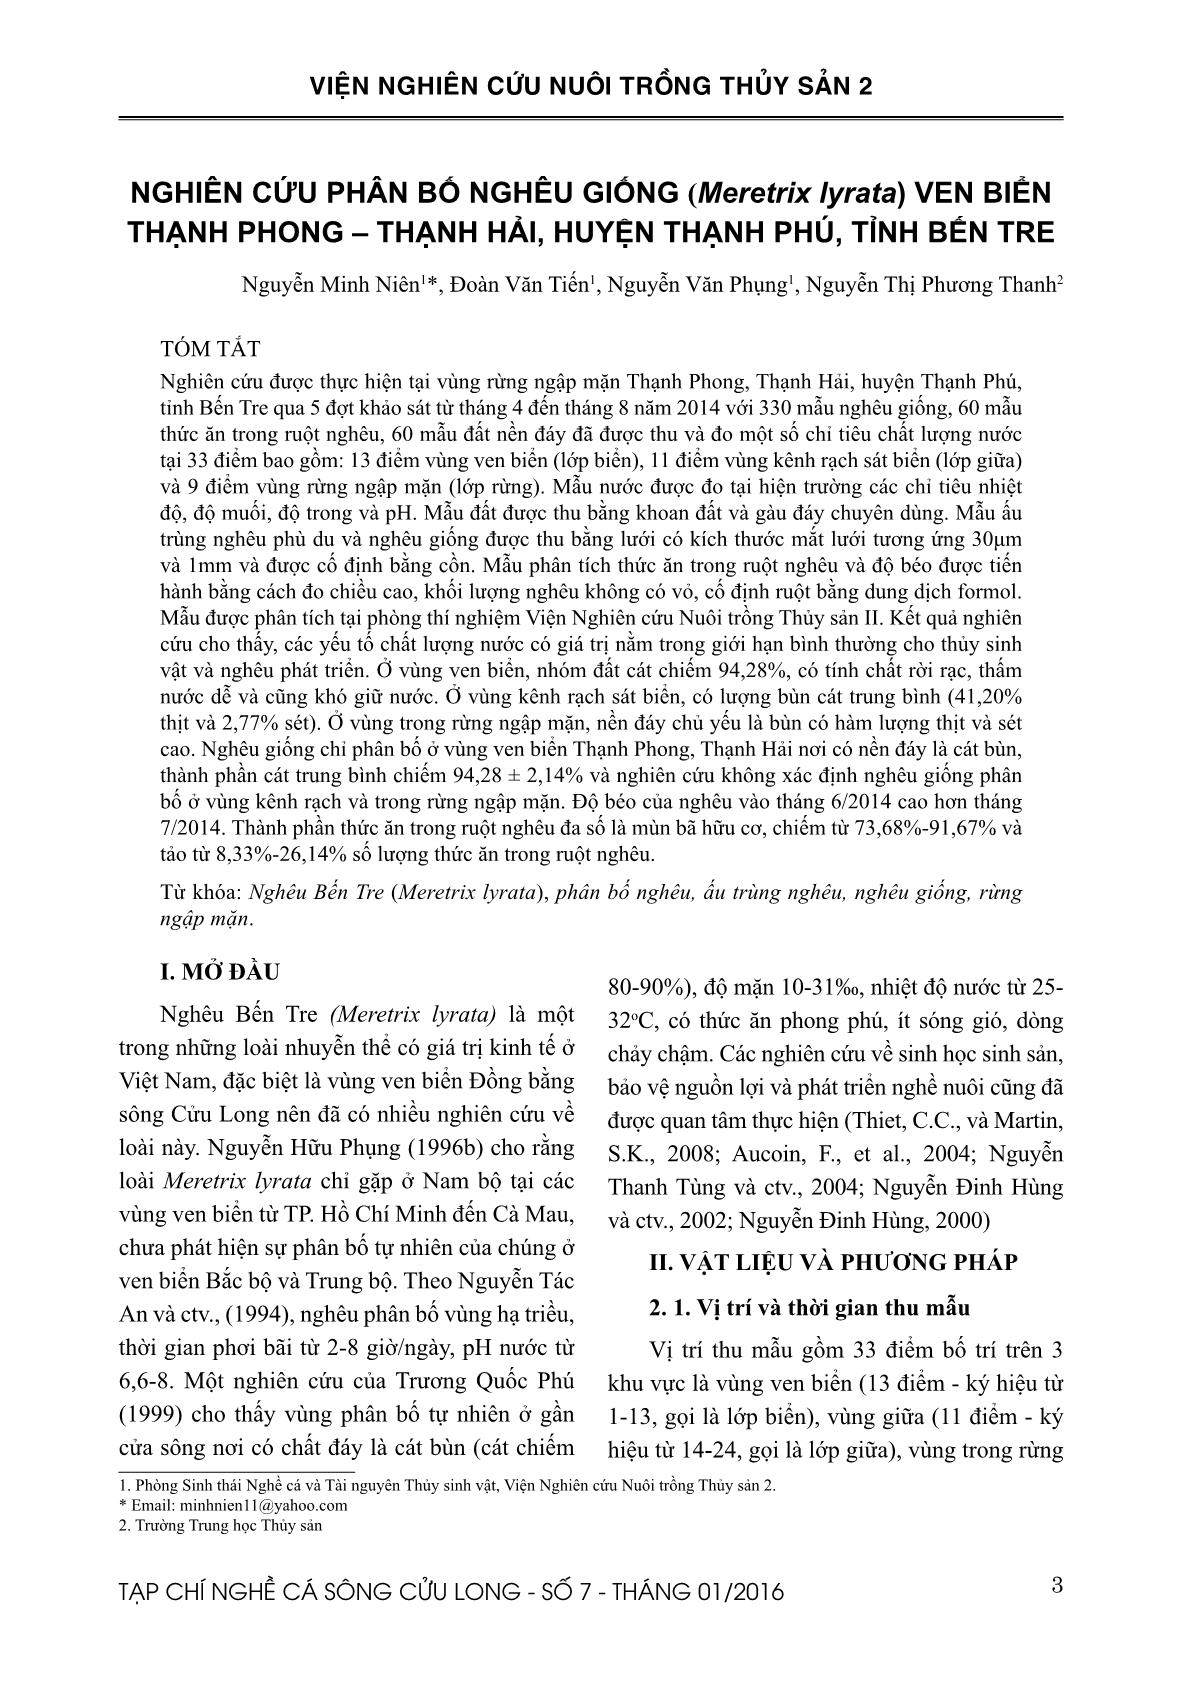 Nghiên cứu phân bố nghêu giống (Meretrix lyrata) ven biển Thạnh Phong – Thạnh Hải, huyện Thạnh Phú, tỉnh Bến Tre trang 1